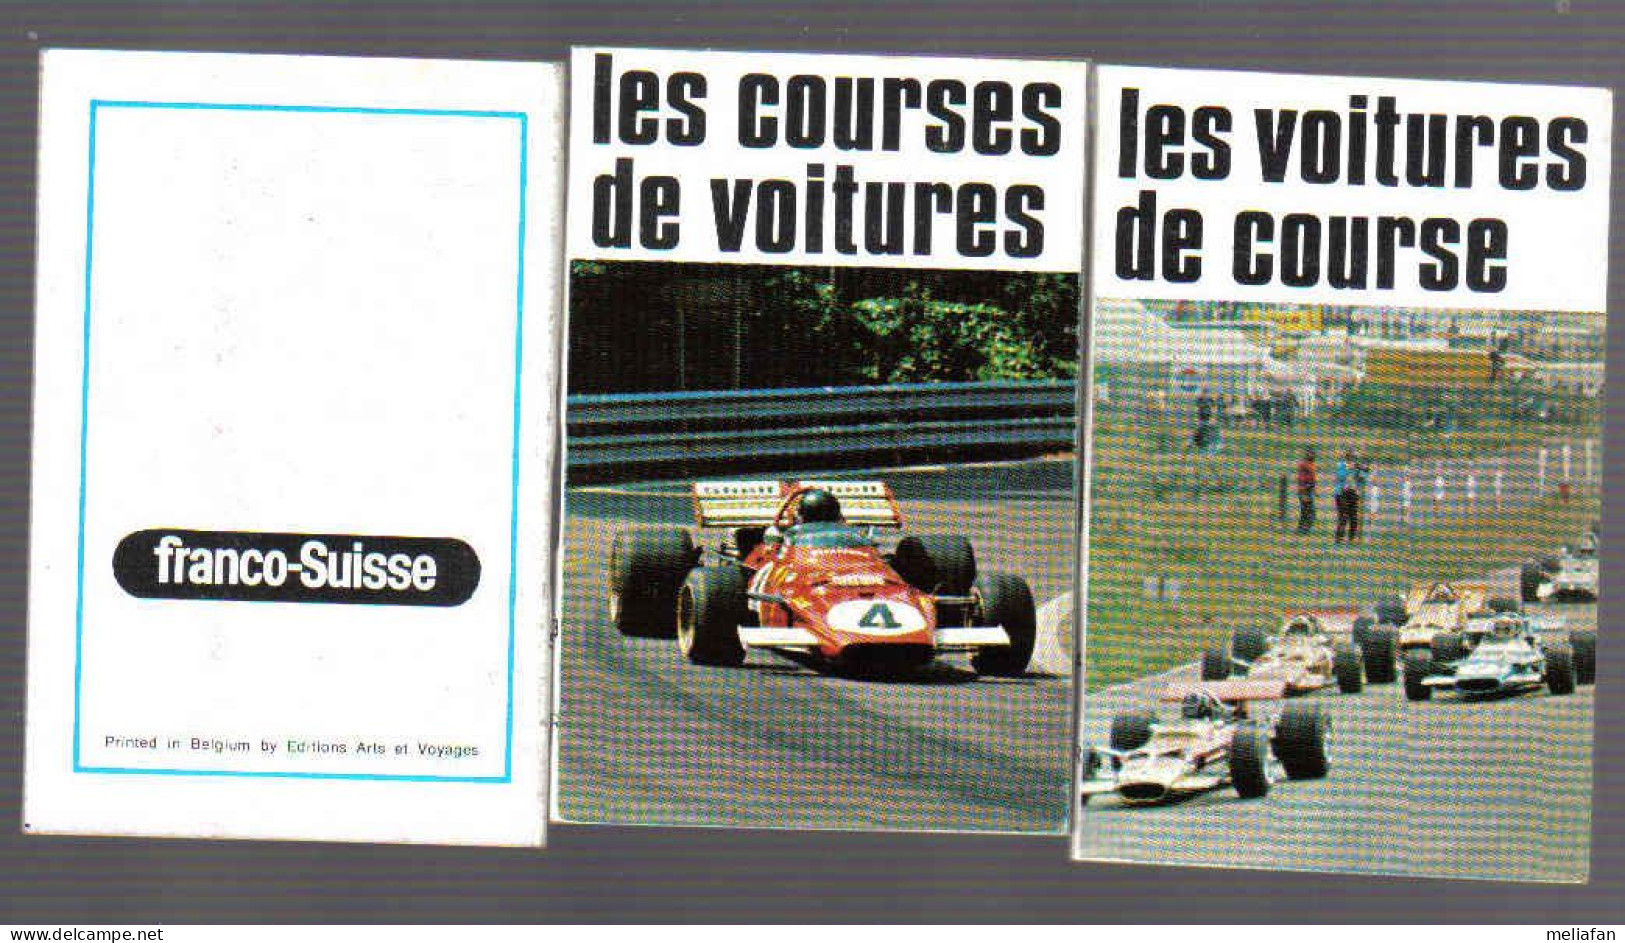 X221 - 2 MINI LIVRES FRANCO-SUISSE - LES VOITURES DE COURSES - Car Racing - F1